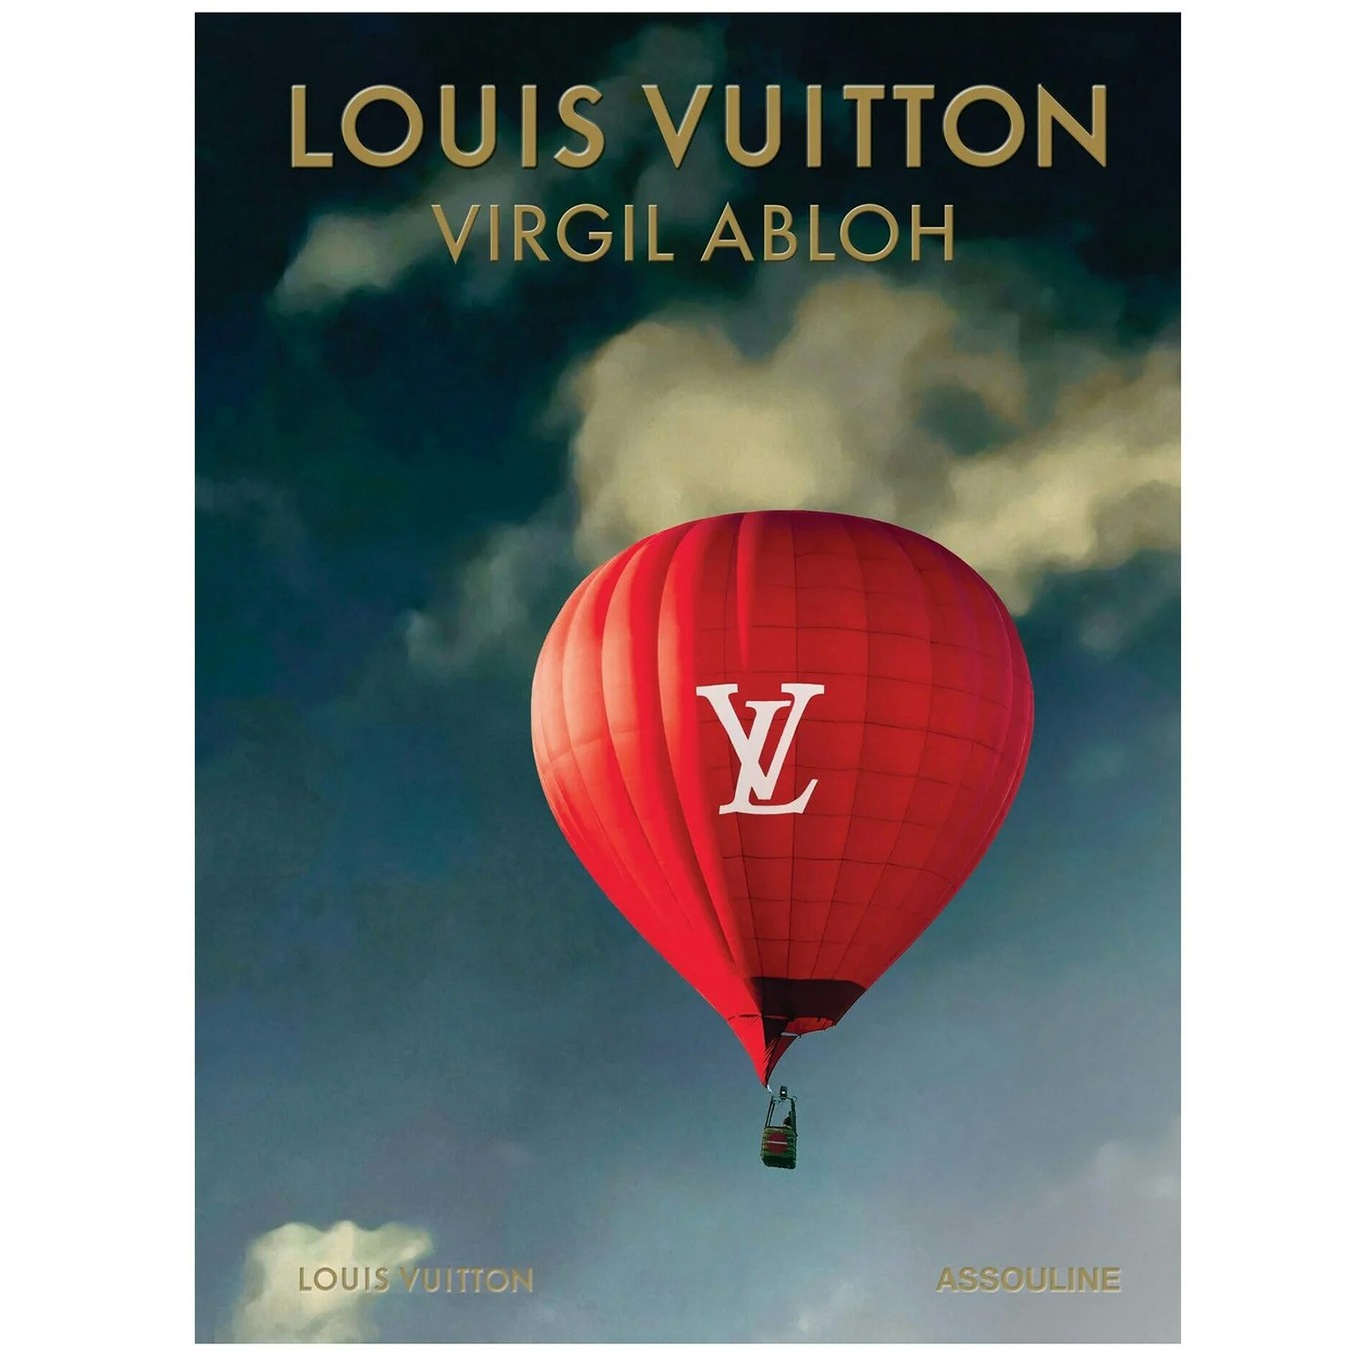 Louis Vuitton: Virgil Abloh (Classic Balloon Cover) Boek